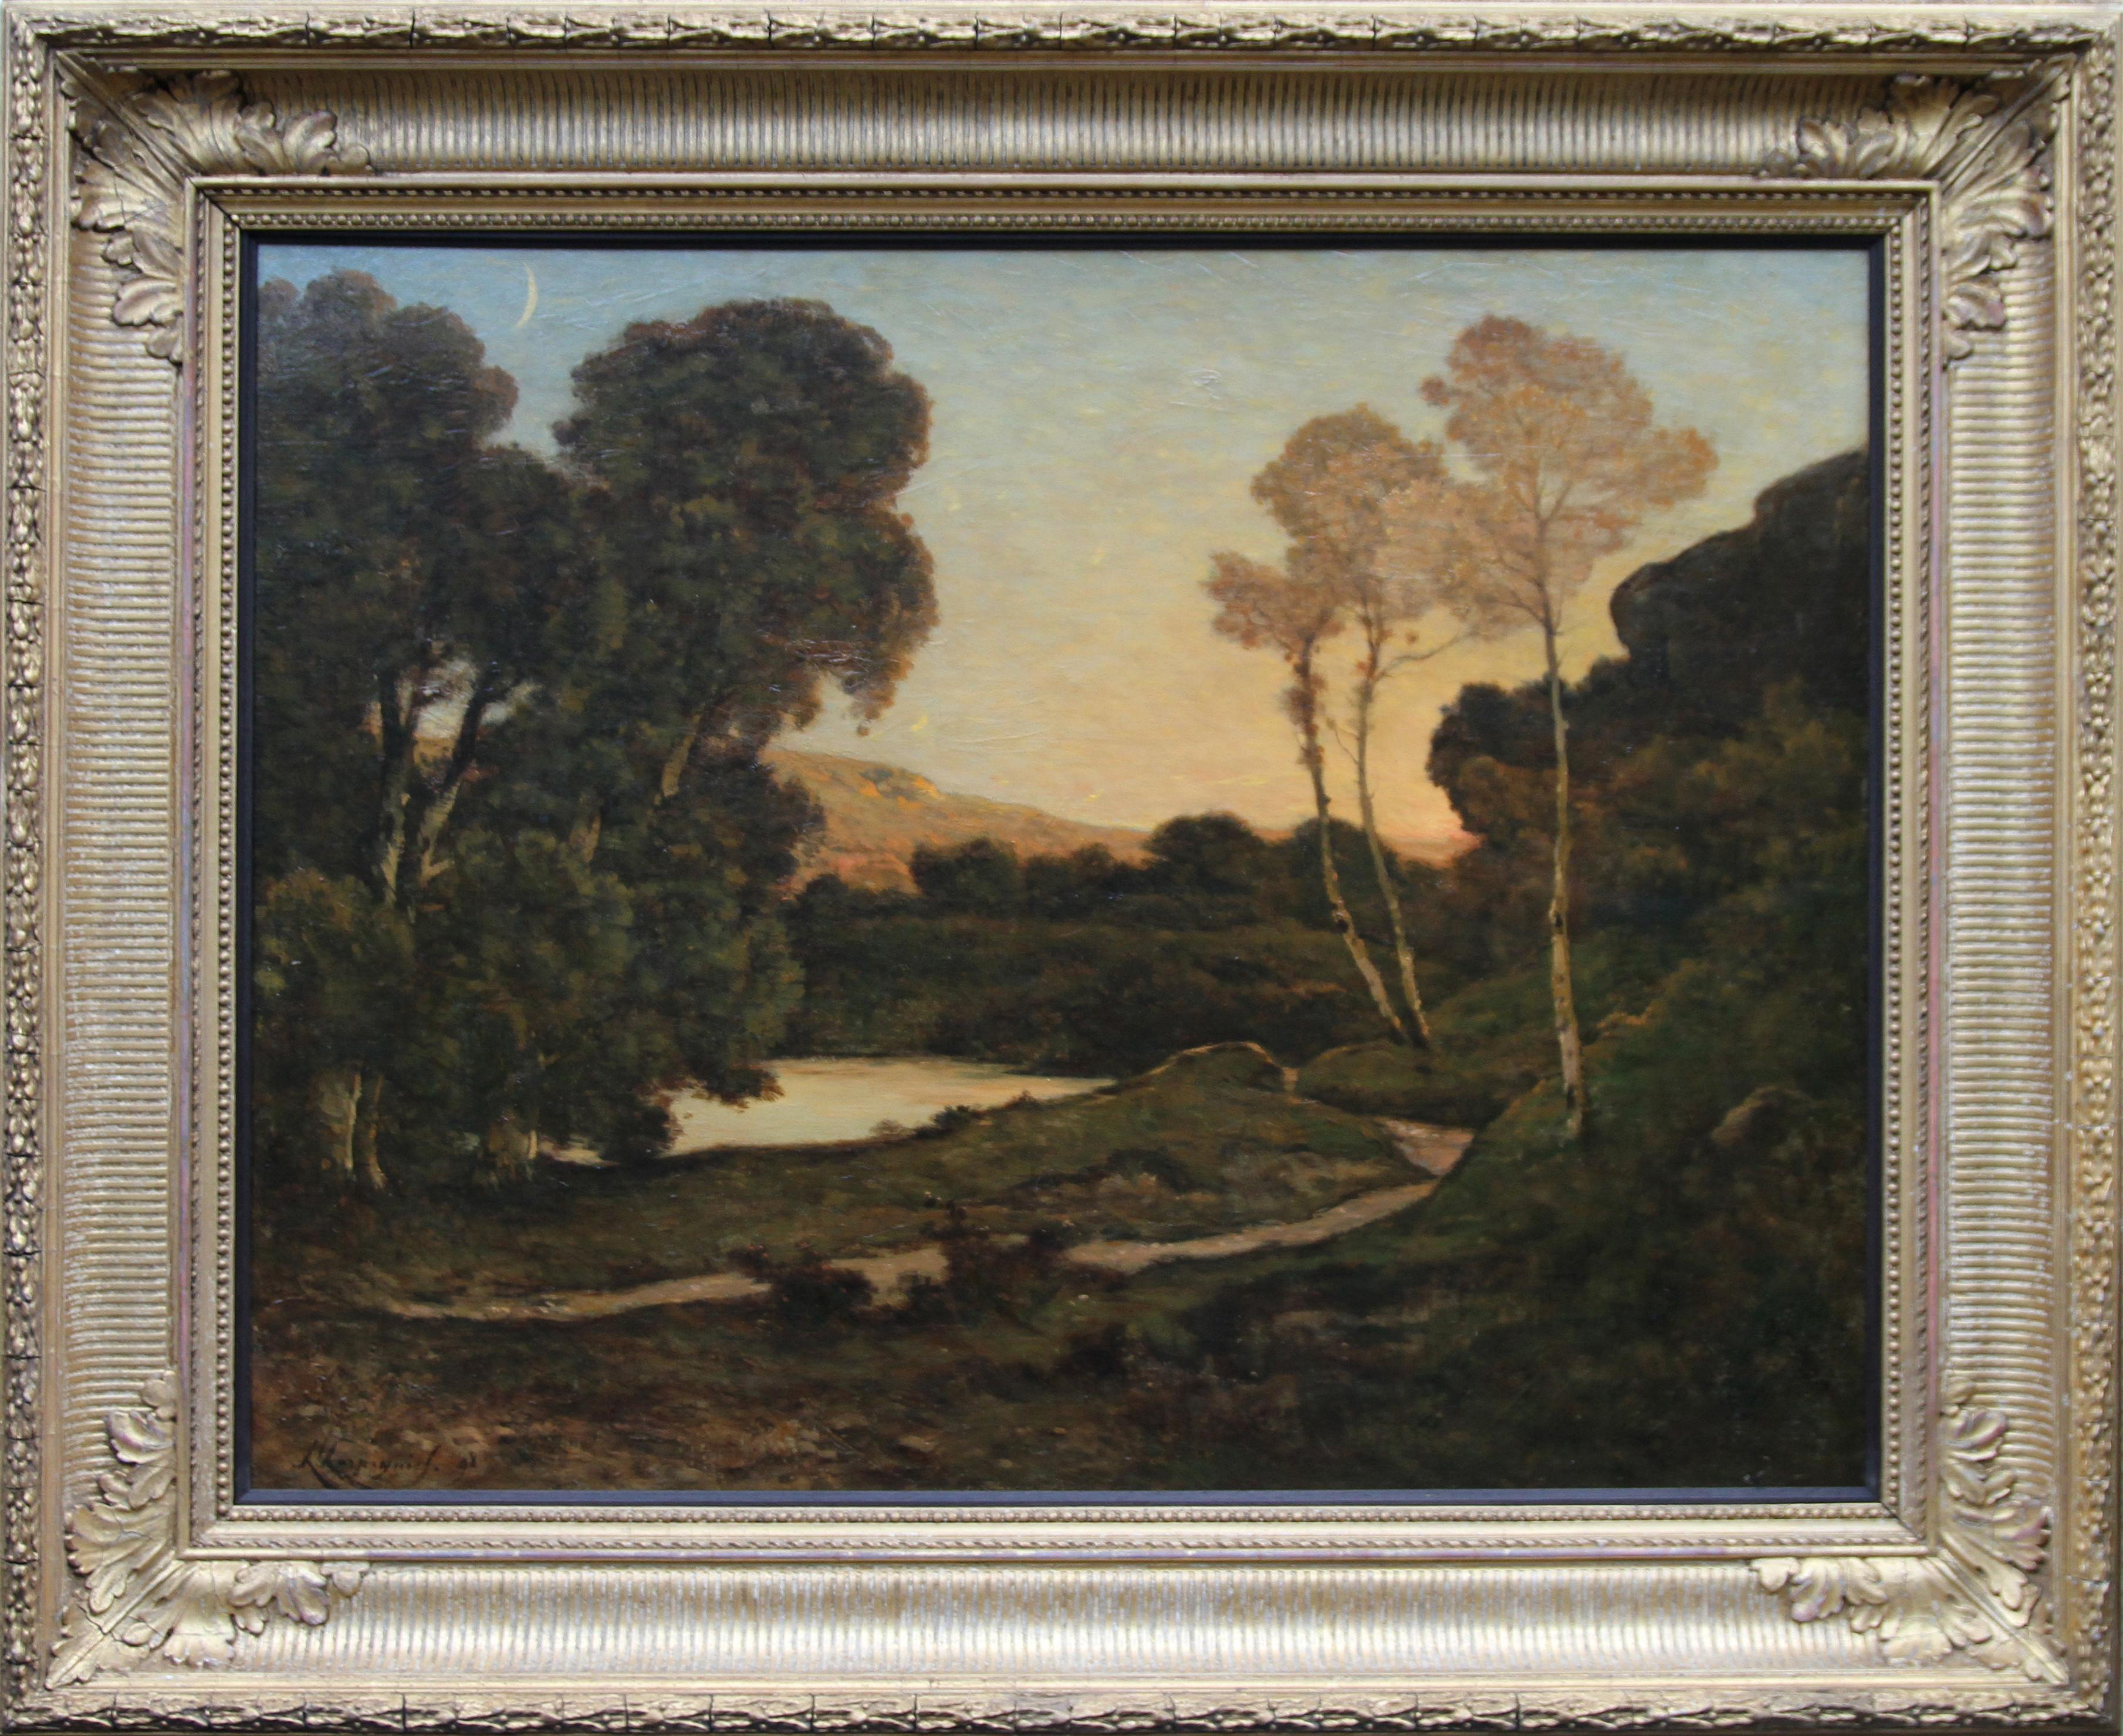 Sunset Landscape- French 19th century Barbizon art river landscape oil painting  - Barbizon School Painting by Henri Joseph Harpignies